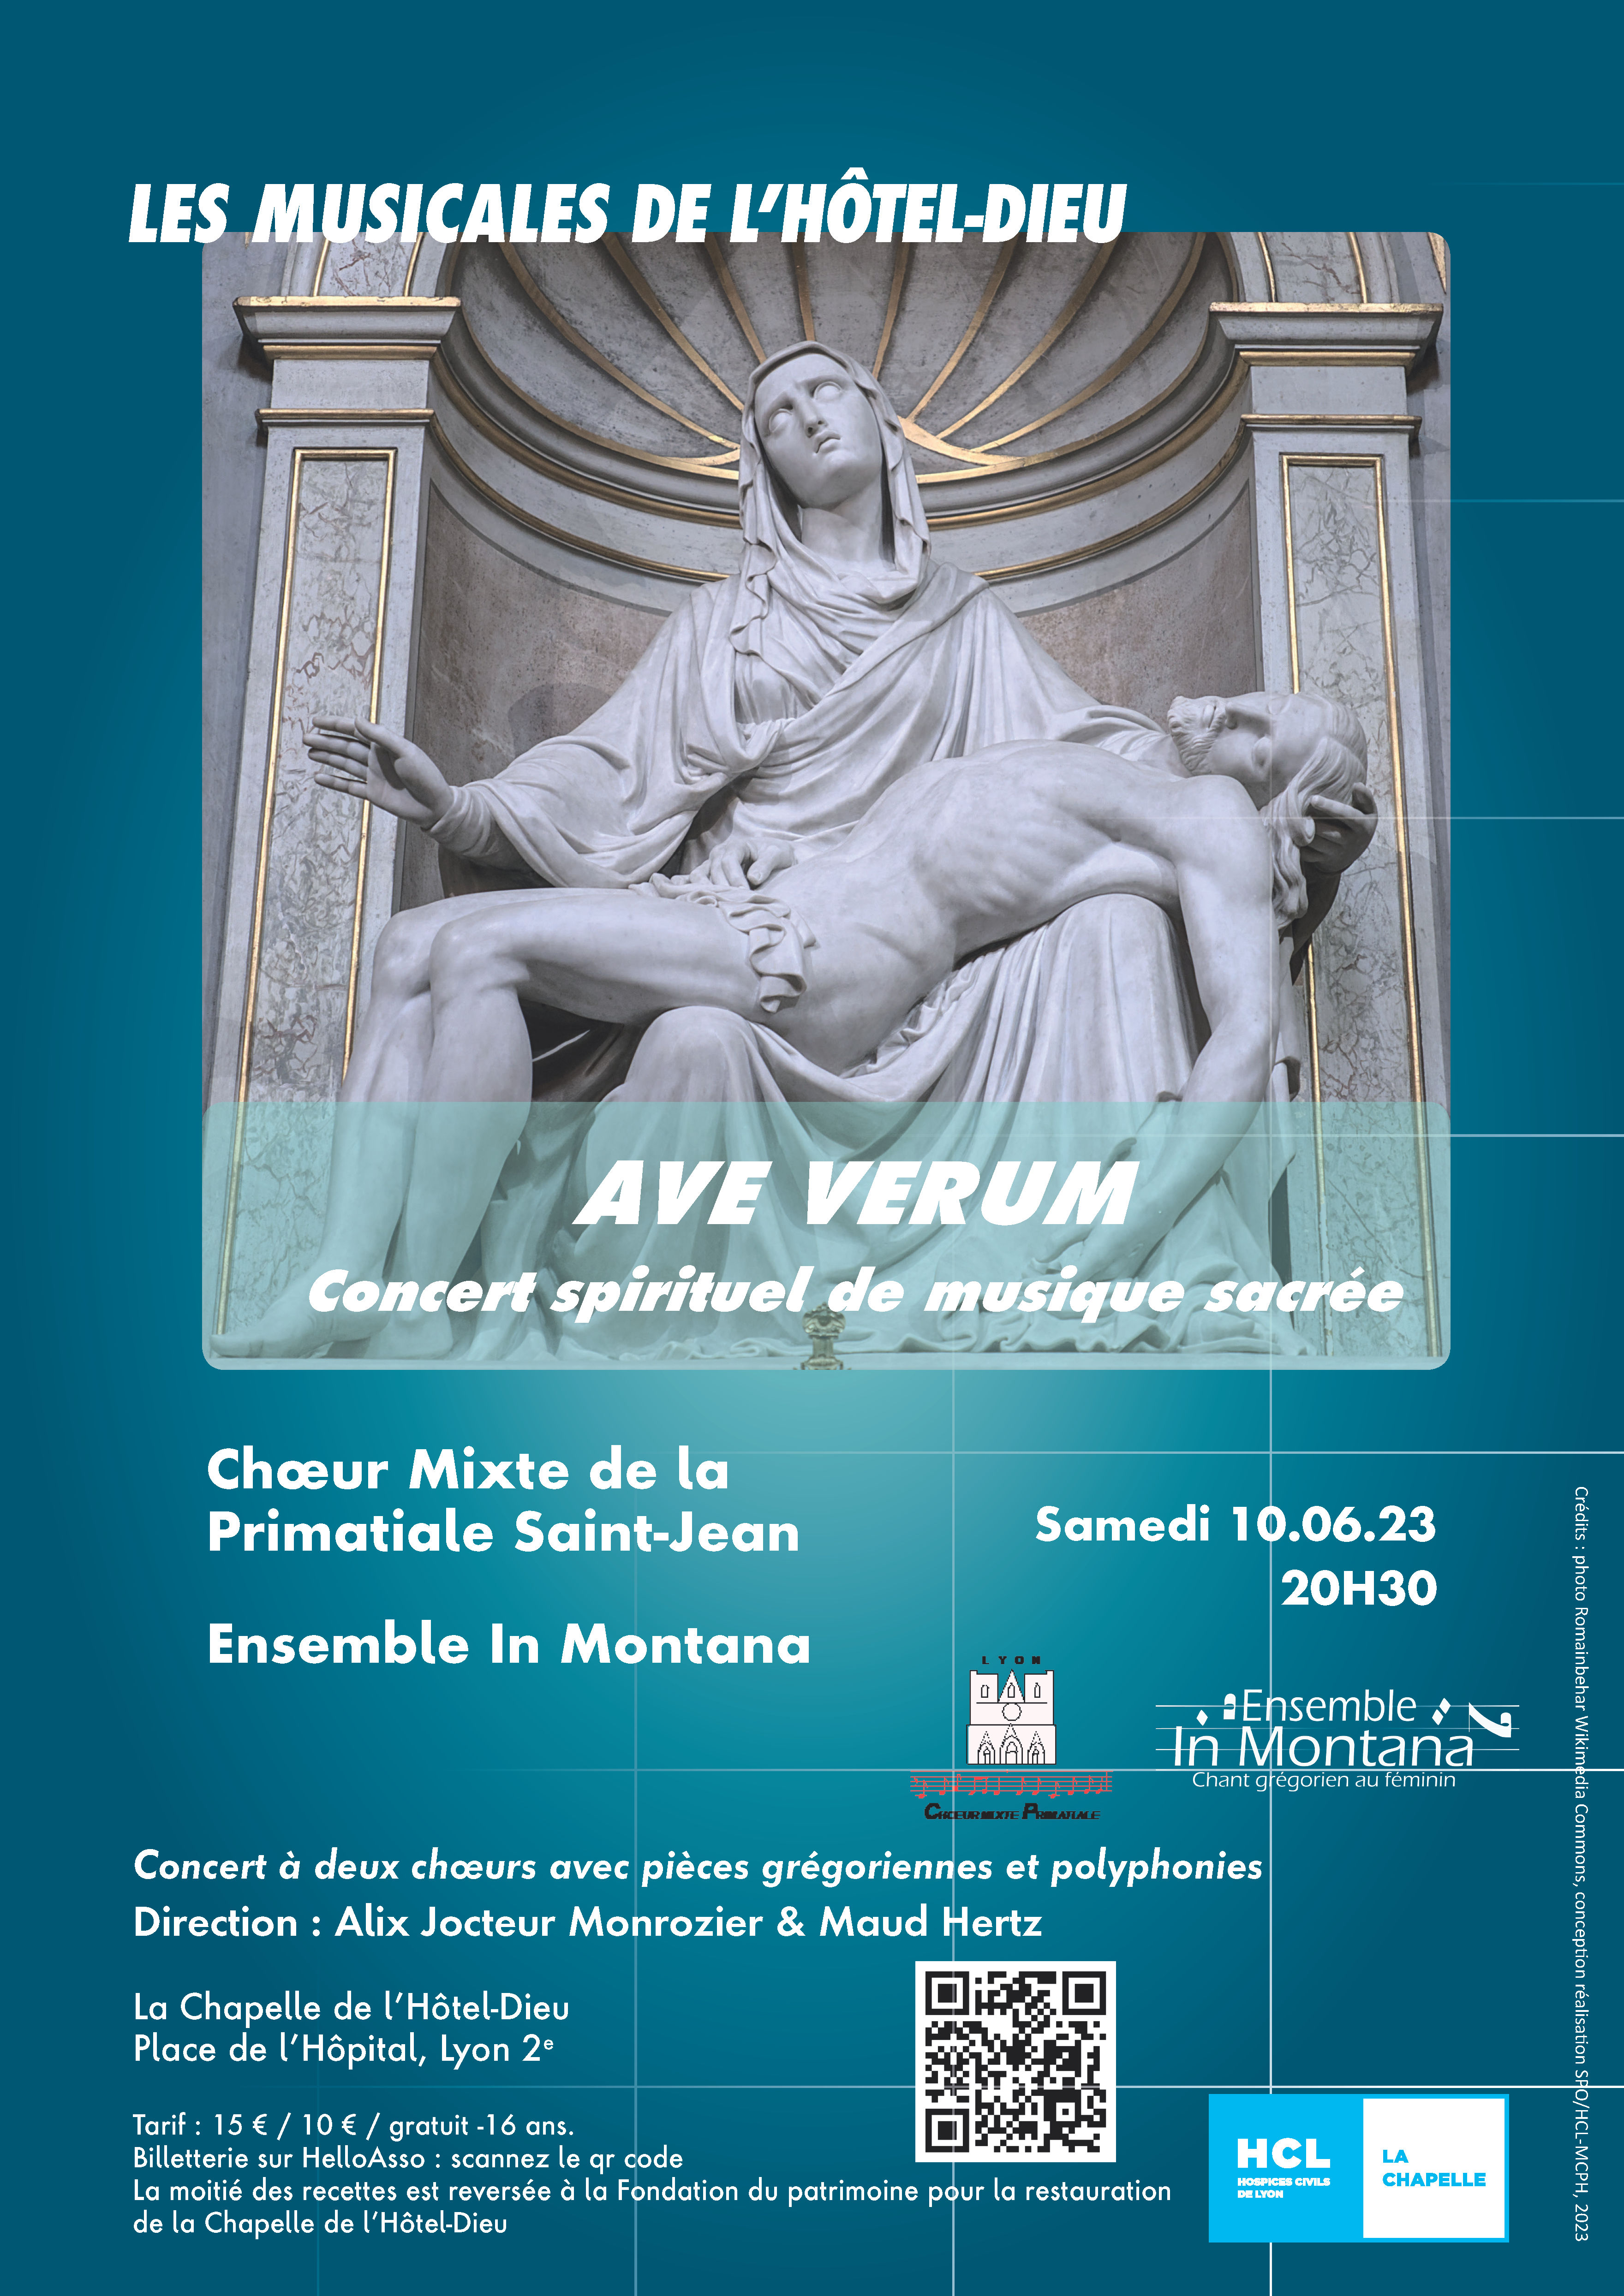 Concert : Chœur Mixte de la Primatiale Saint-Jean. Samedi 10 juin à 20h30 - Chapelle de l'Hôtel-Dieu